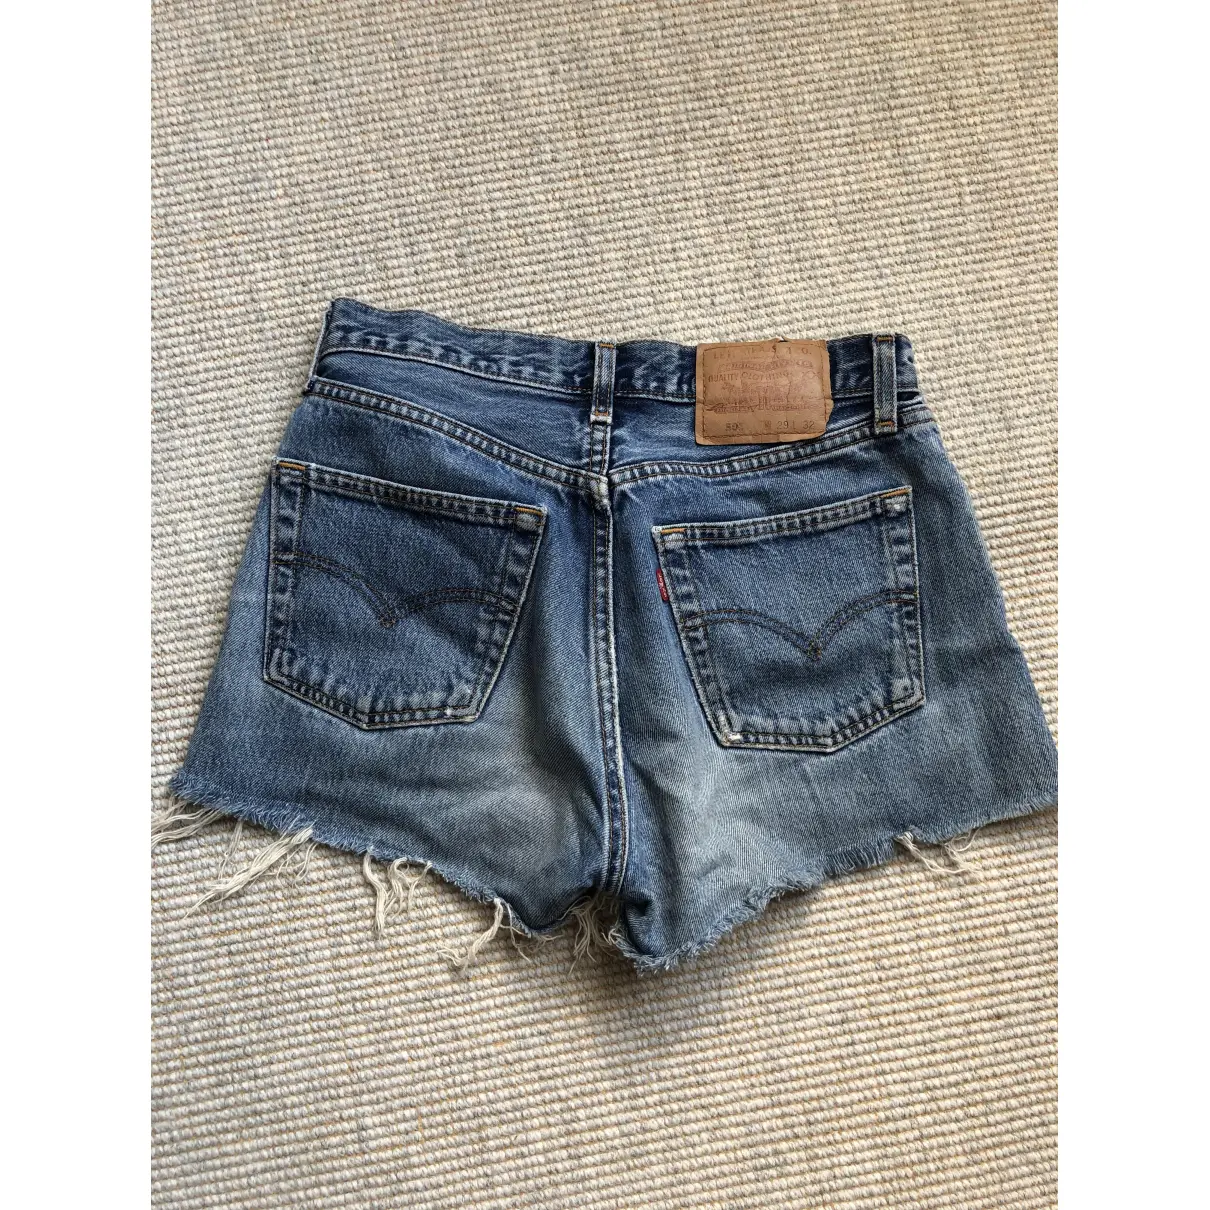 Buy Levi's Blue Denim - Jeans Shorts online